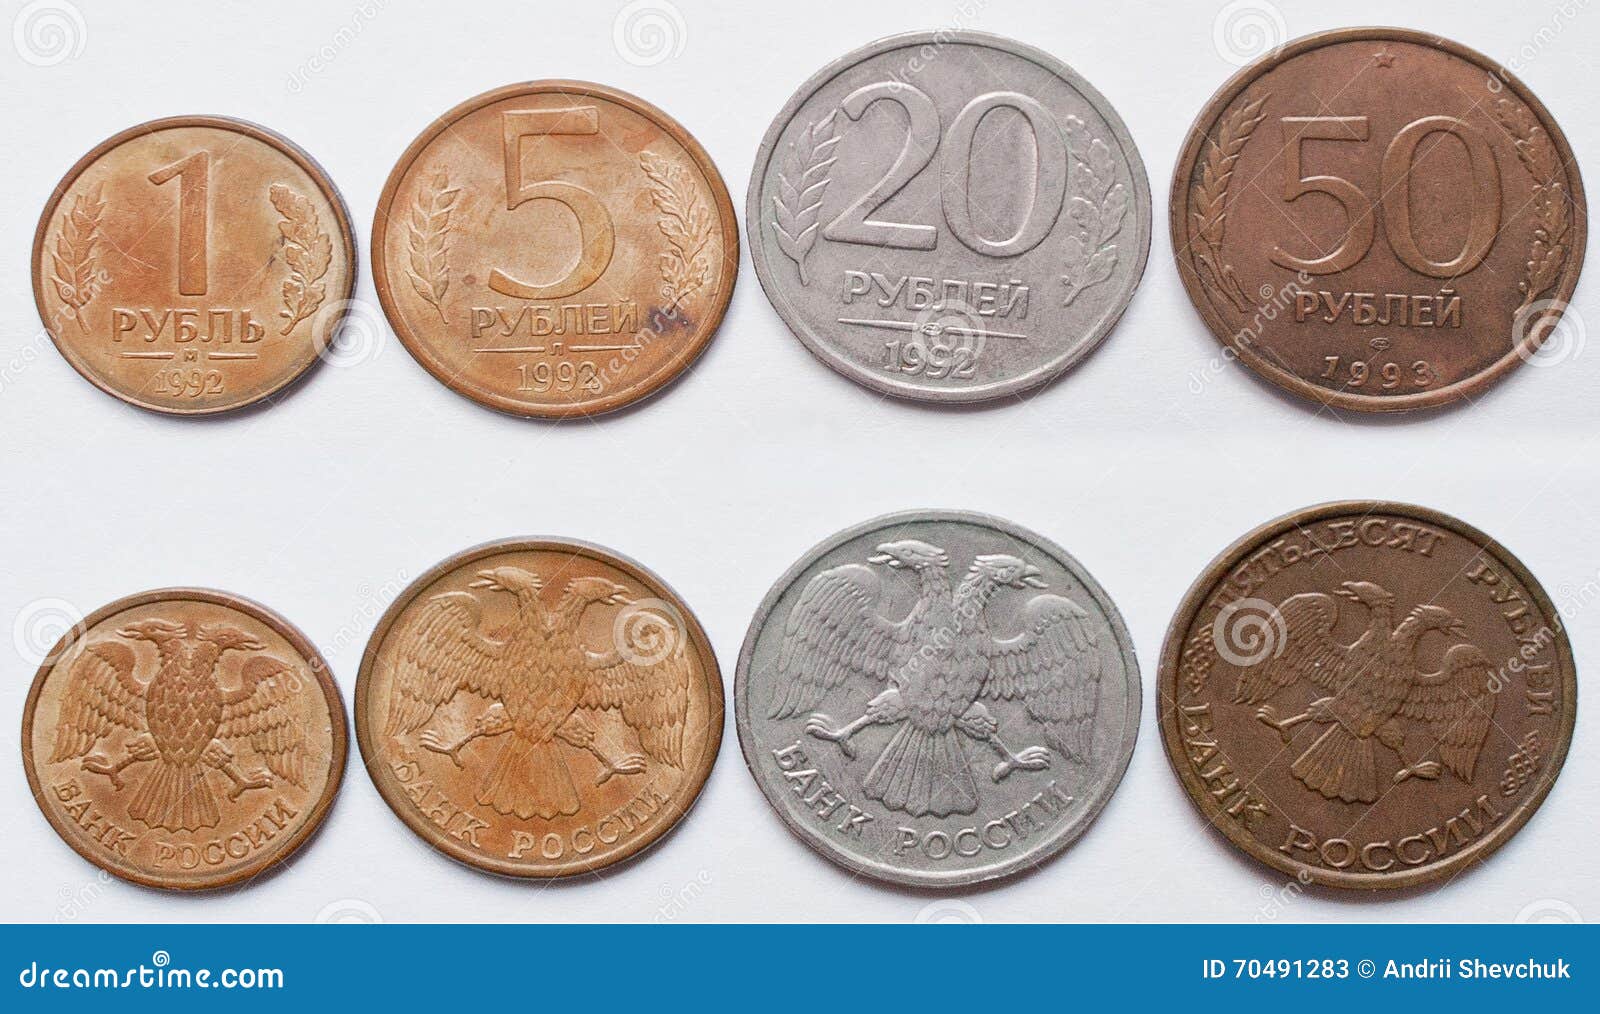 300 лей в рублях. Леи в рубли. Лей в рублях. Леи к рублю. Монеты 1992-1993 Казахстана фото.